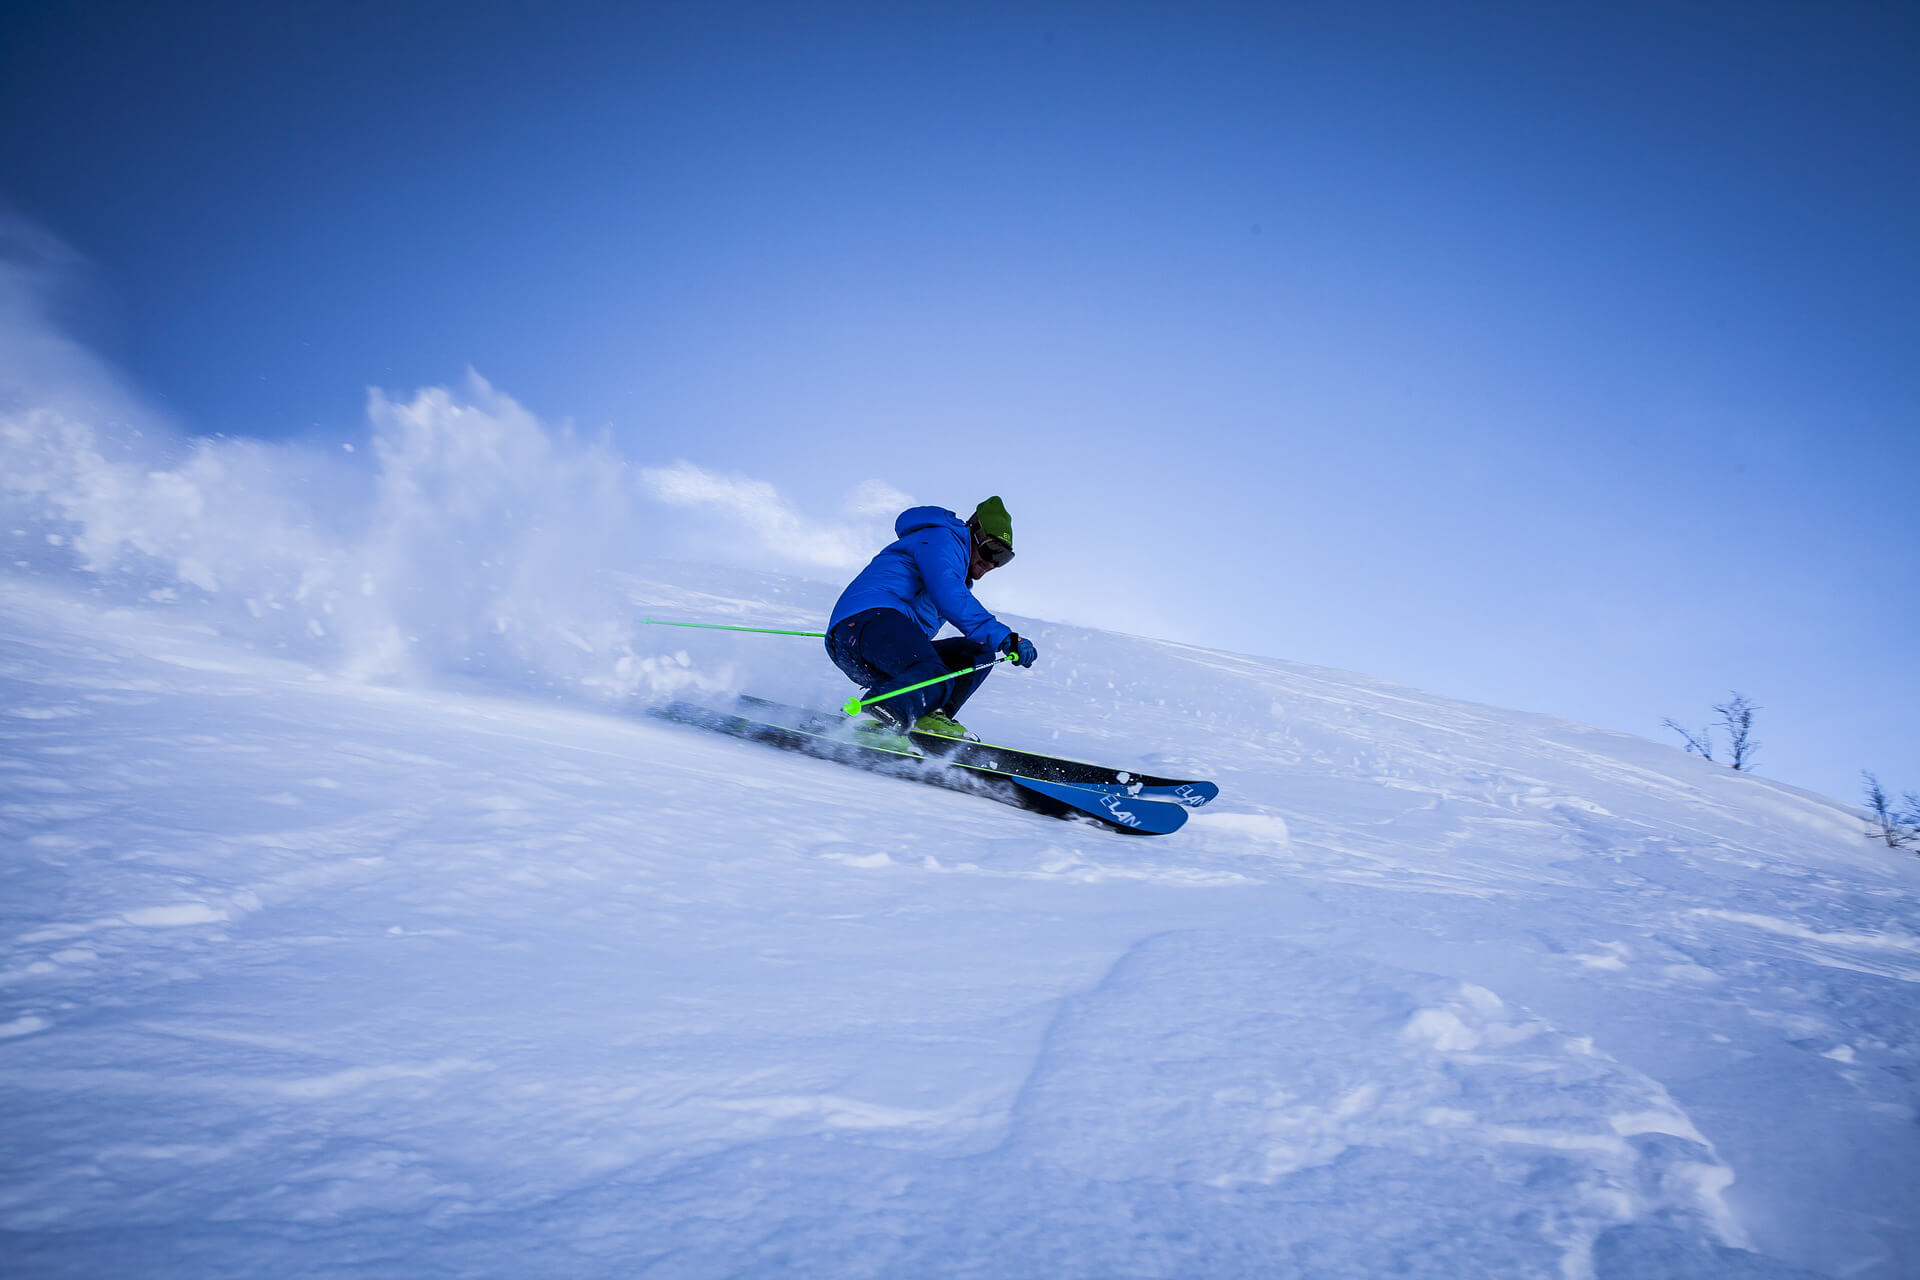 Σκι στο χιονοδρομικό κέντρο Νεράϊδας